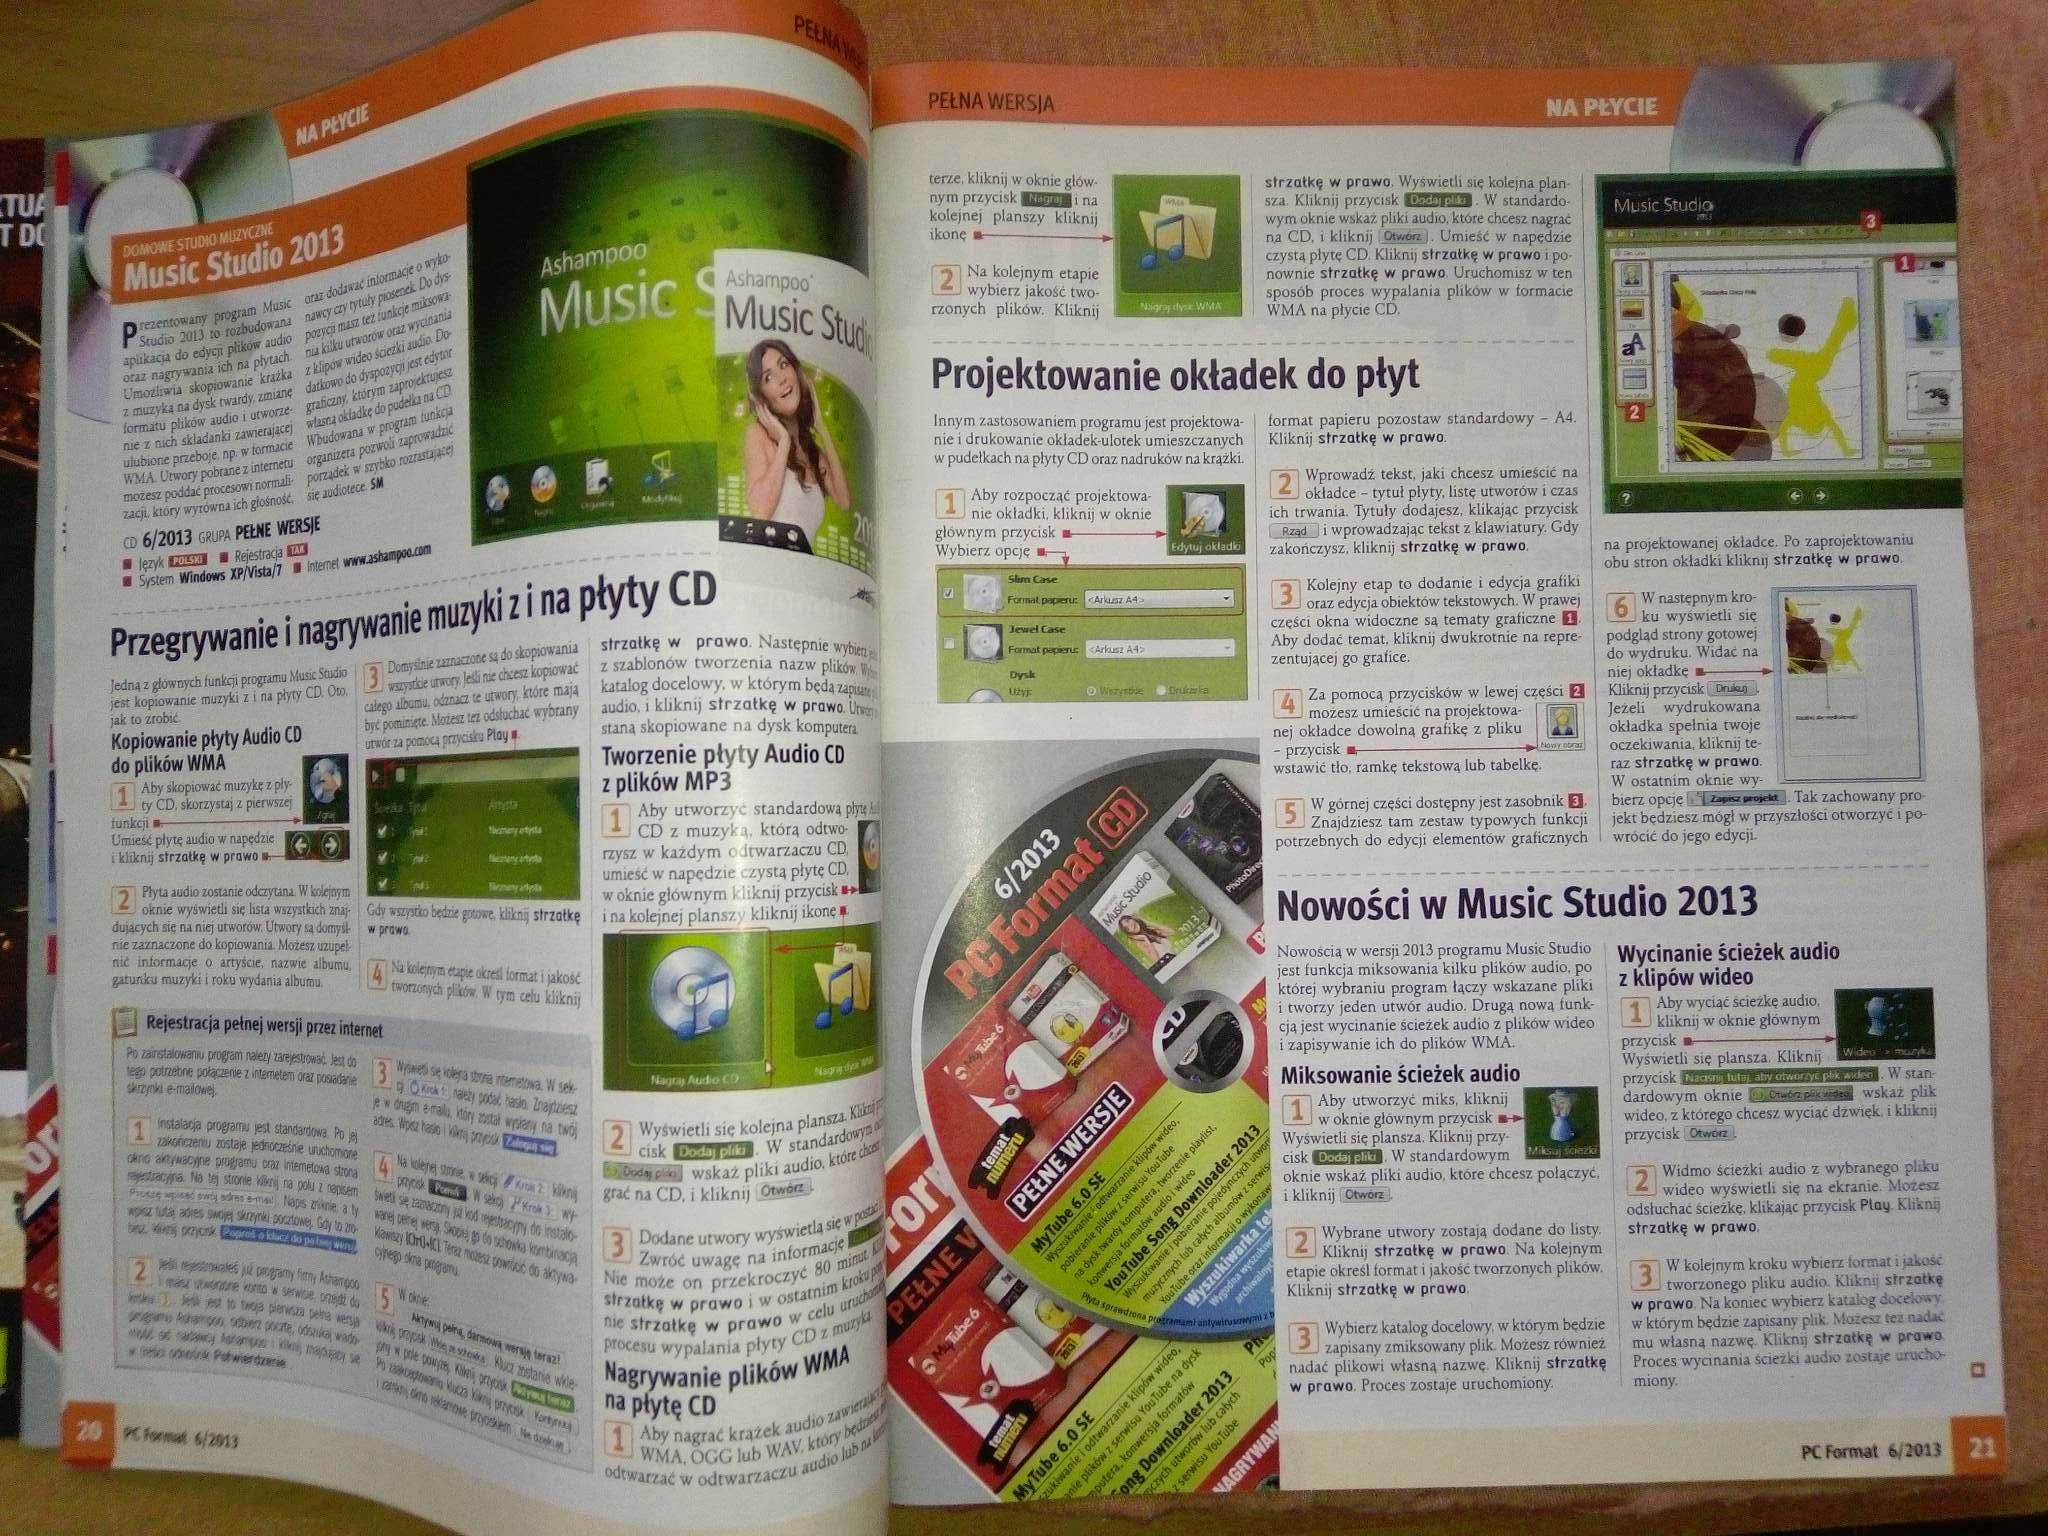 PC Format 6 2013 czerwiec (154) Gazeta + płyta CD Czasopismo